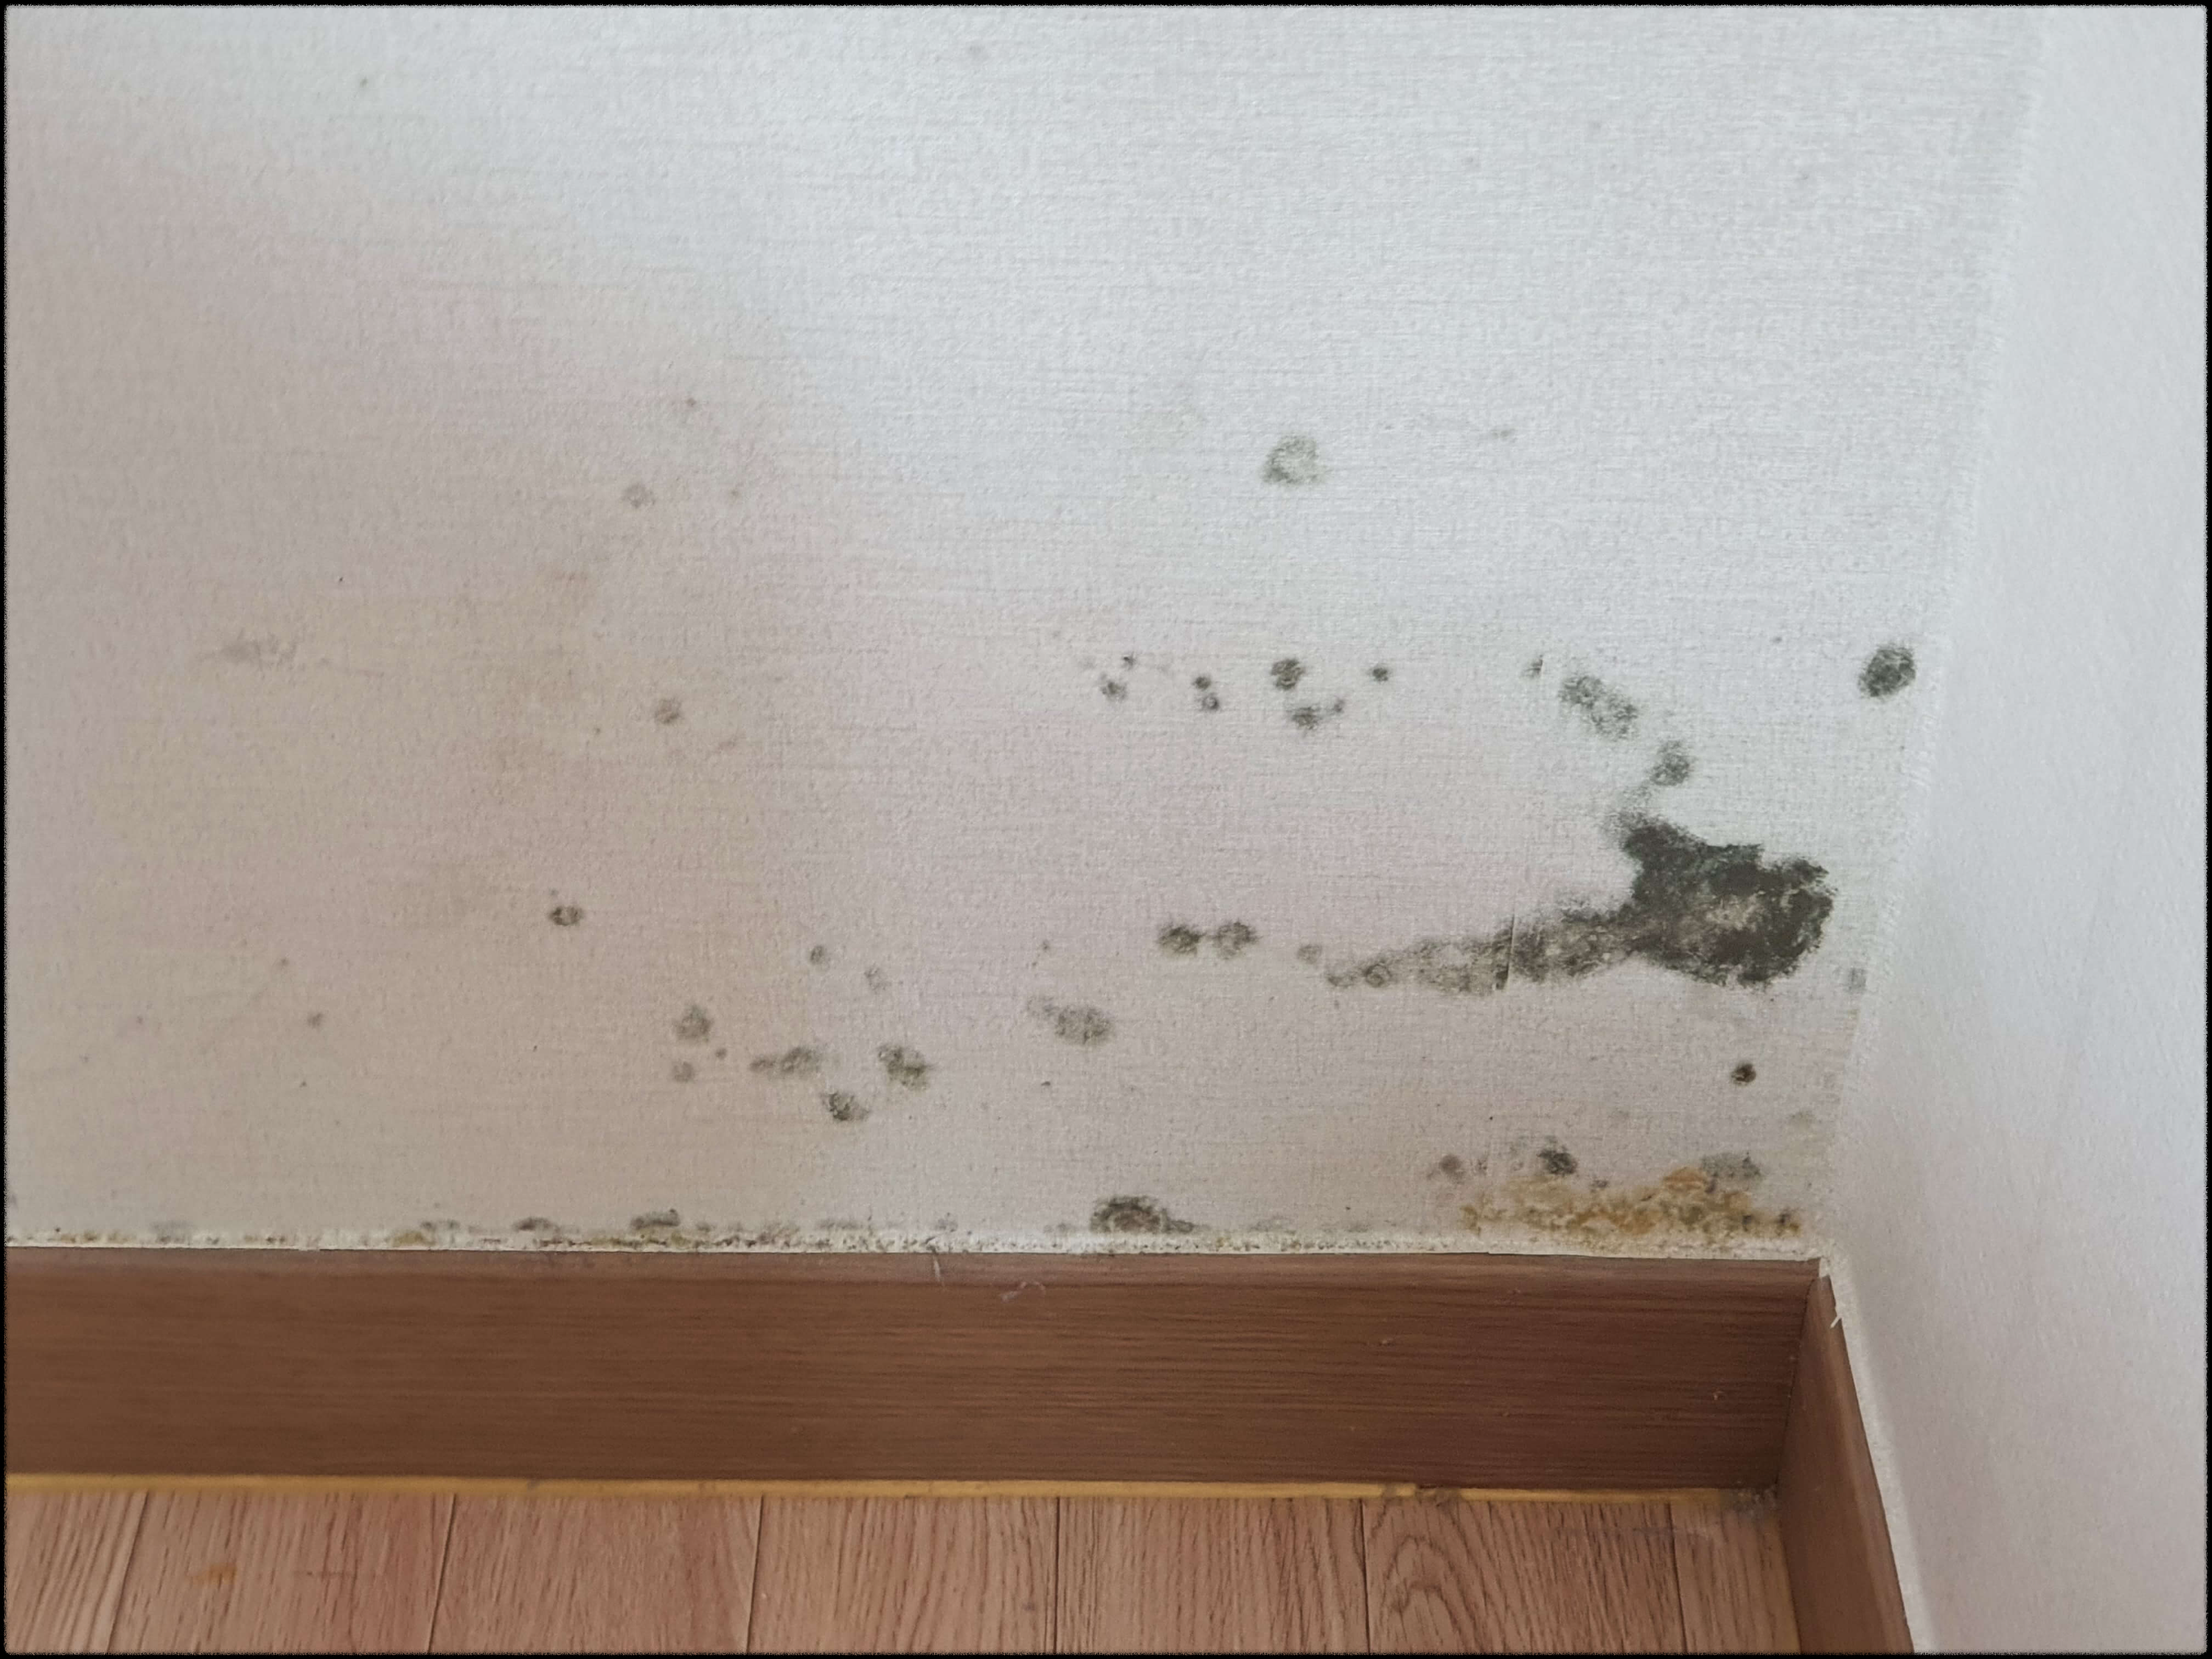 방 벽면에 발생한 곰팡이 사례